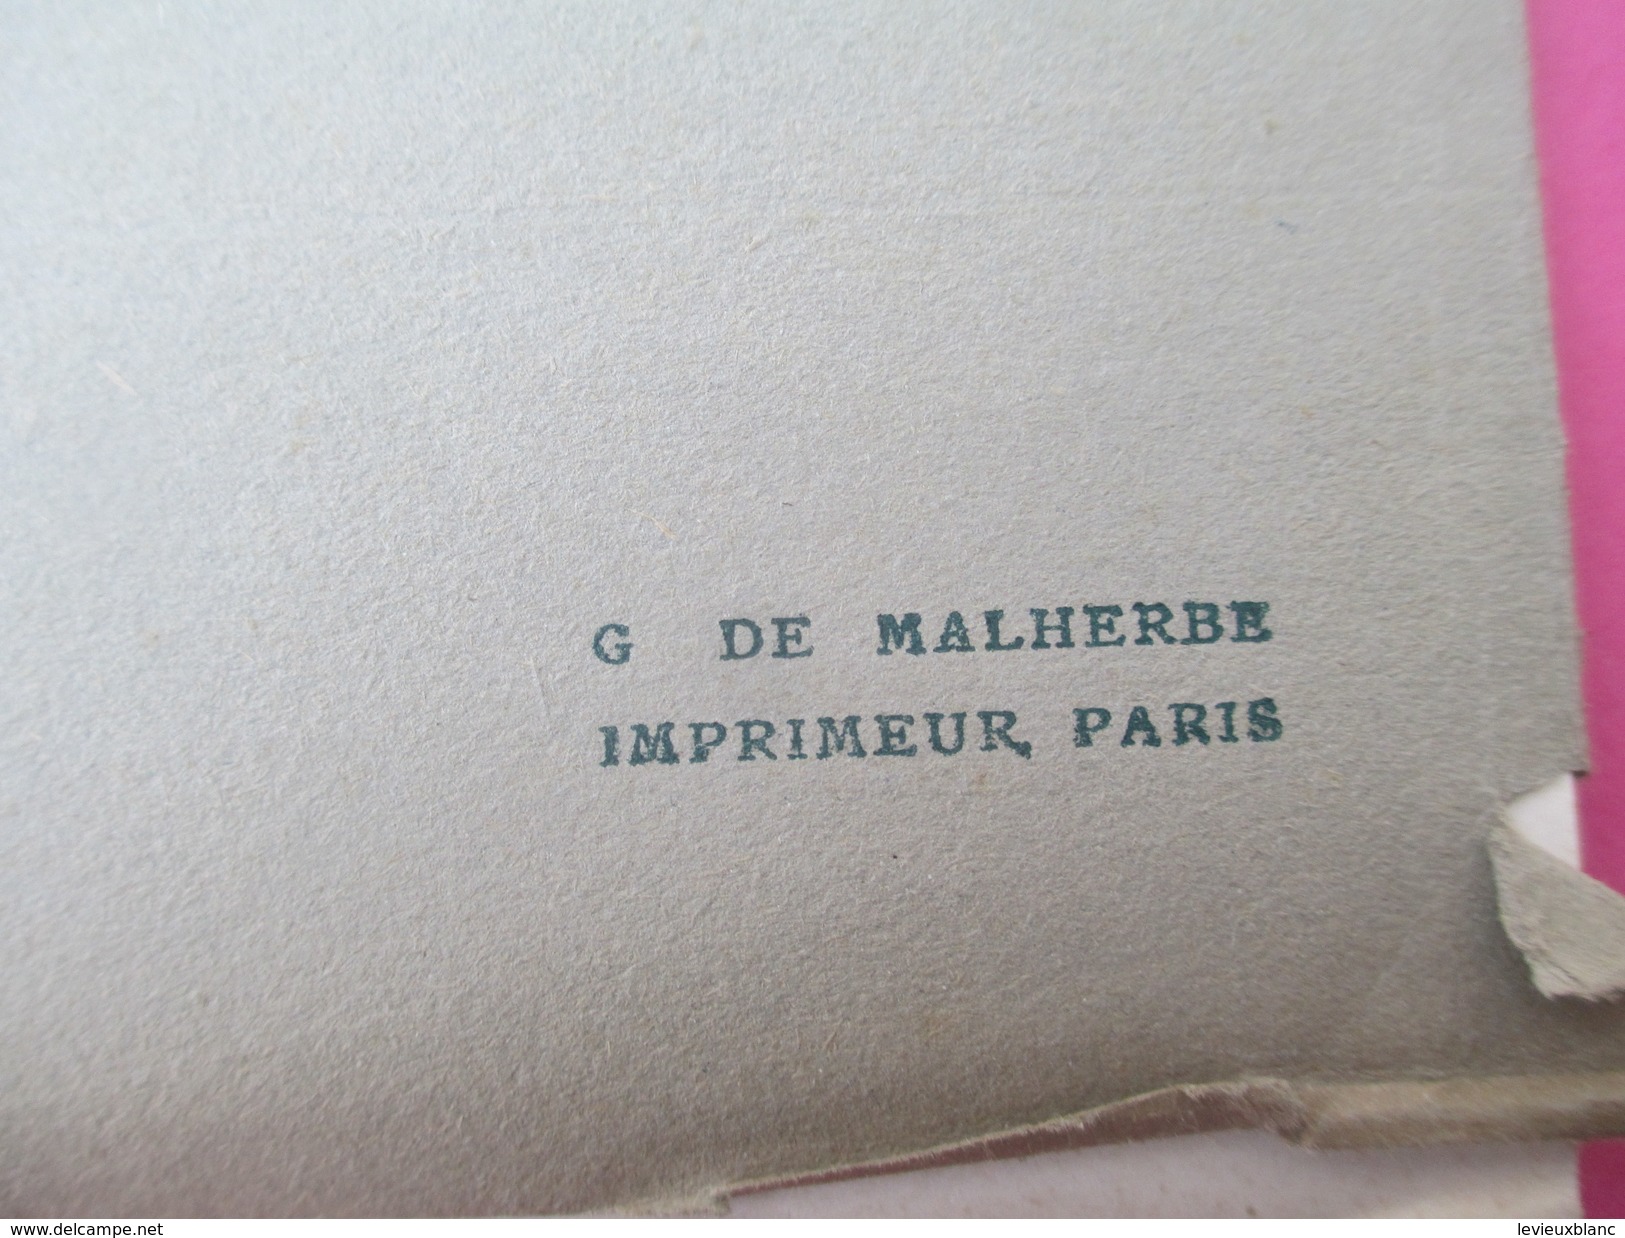 Calendrier de Luxe très grand format/offert par la BELLE JARDINIERE/Les Saisons par Lancret/Louvre/Angers/1911    CAL384